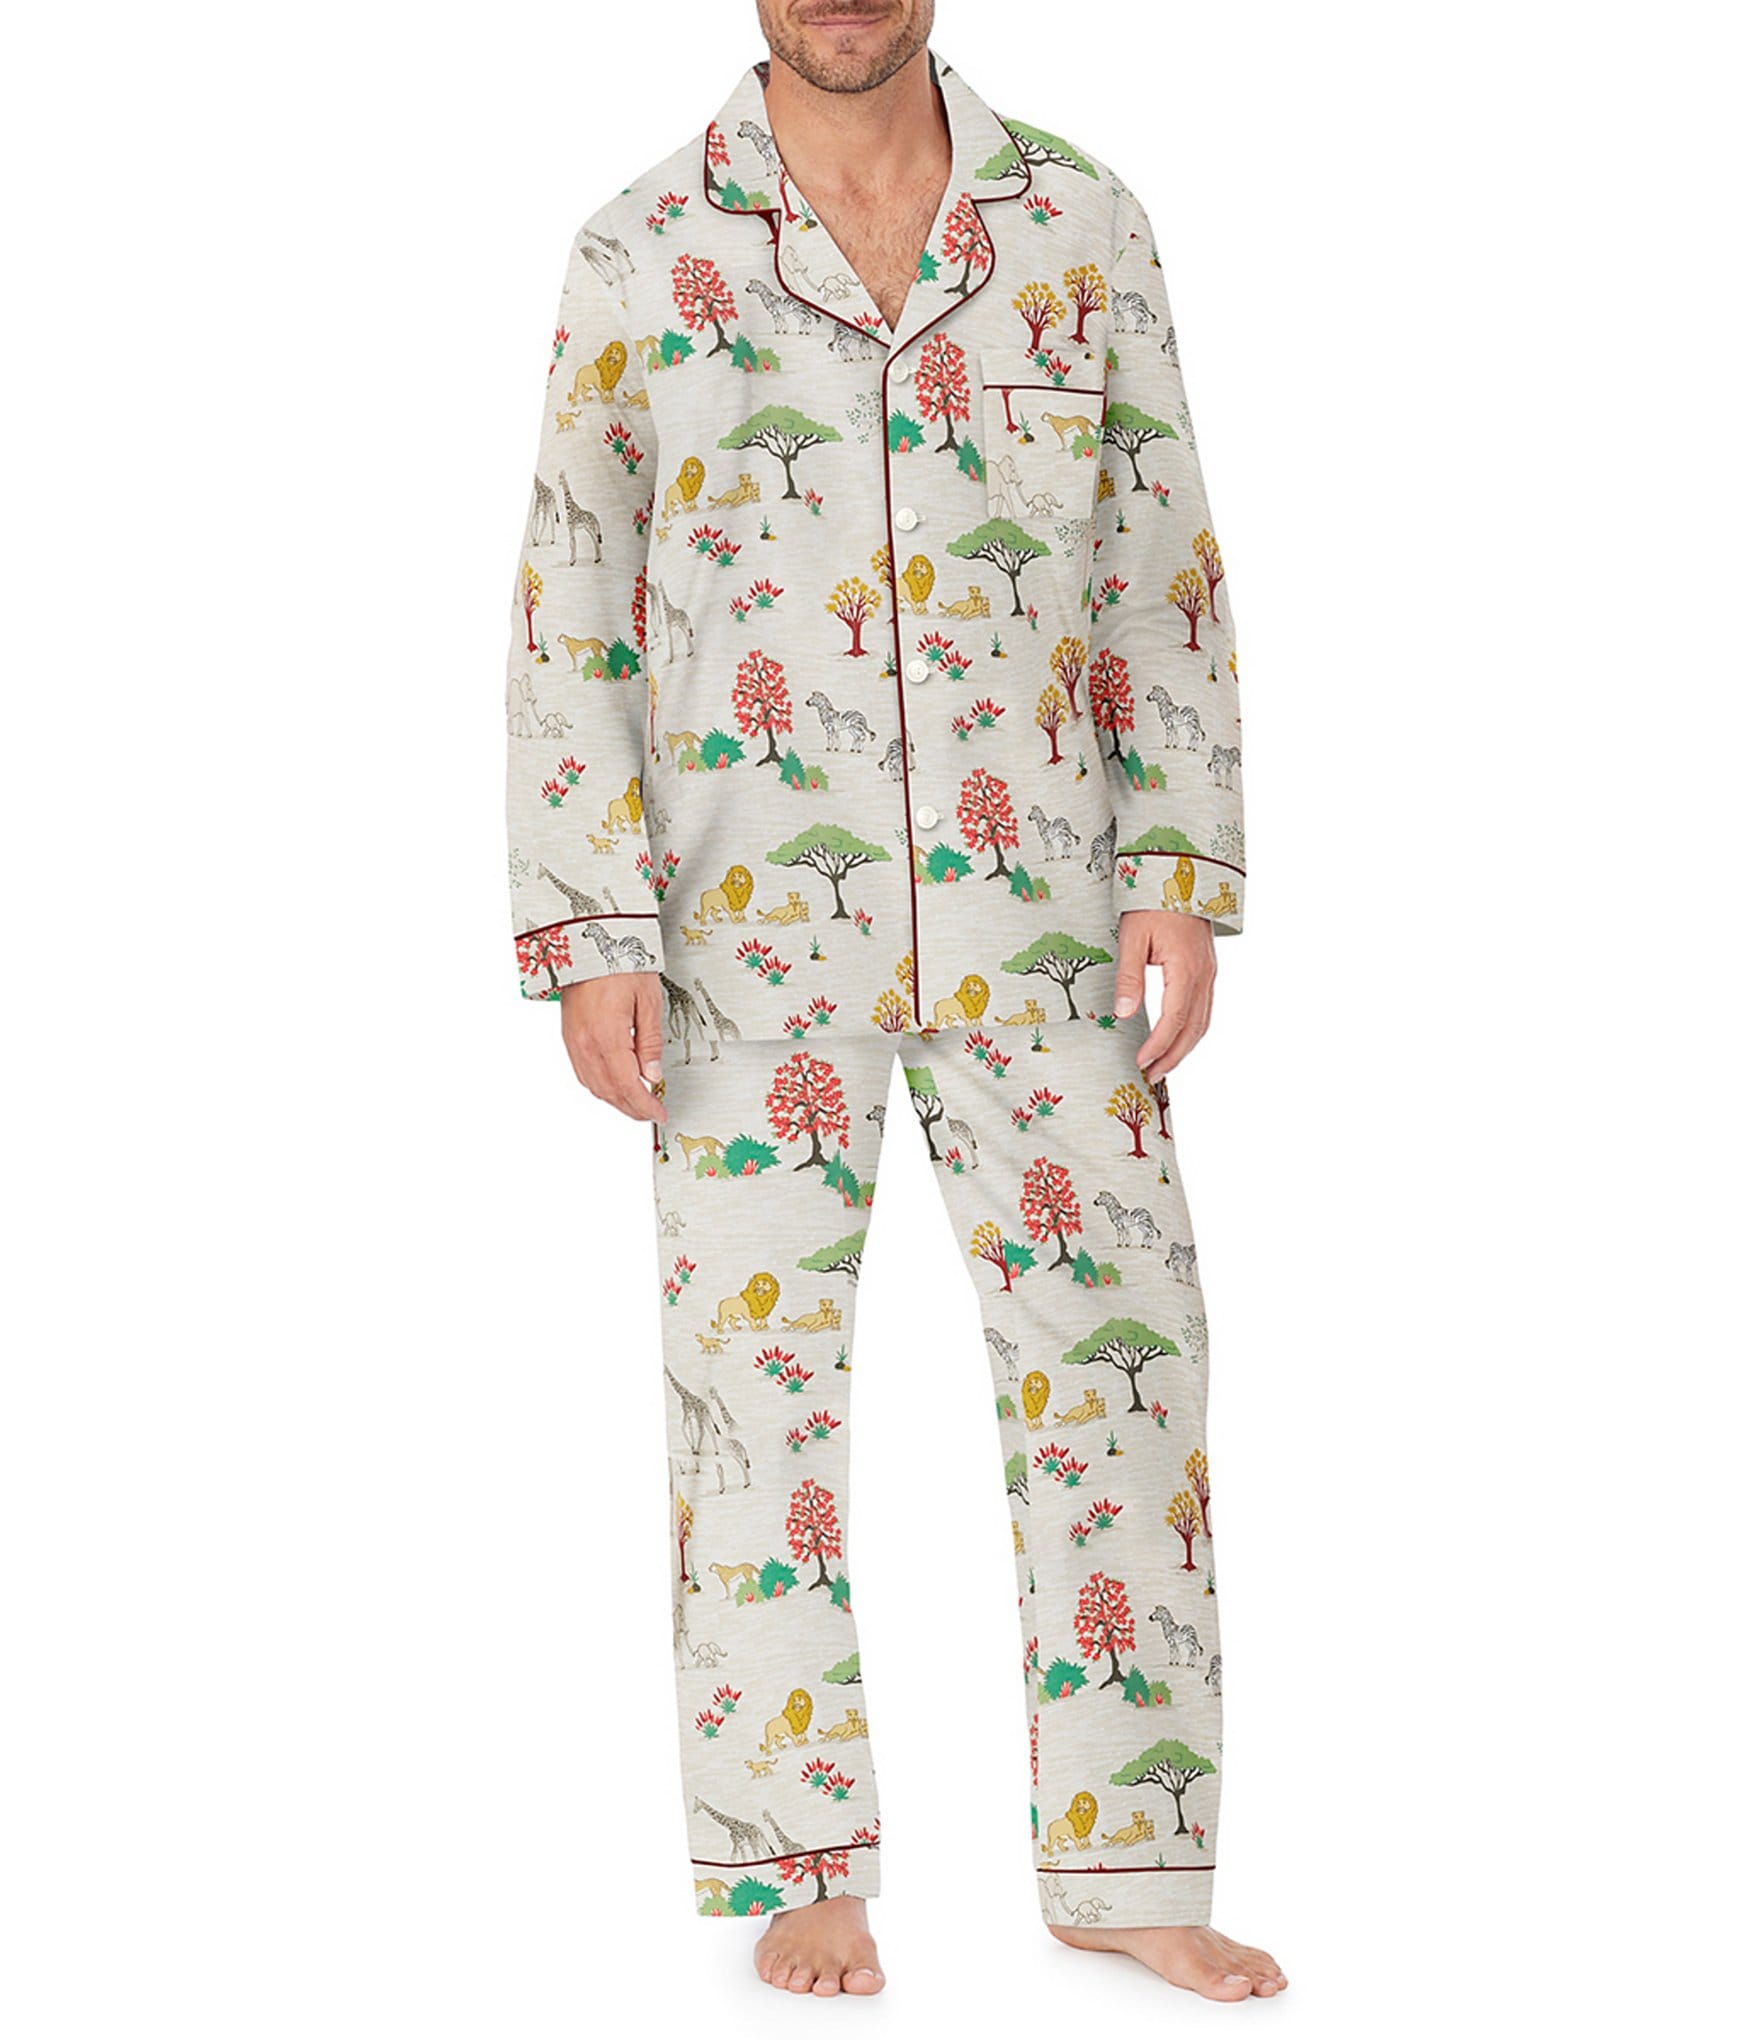 Mens Sleepwear Mens Designer Pajamas For Men Nightwear Long Sleeve